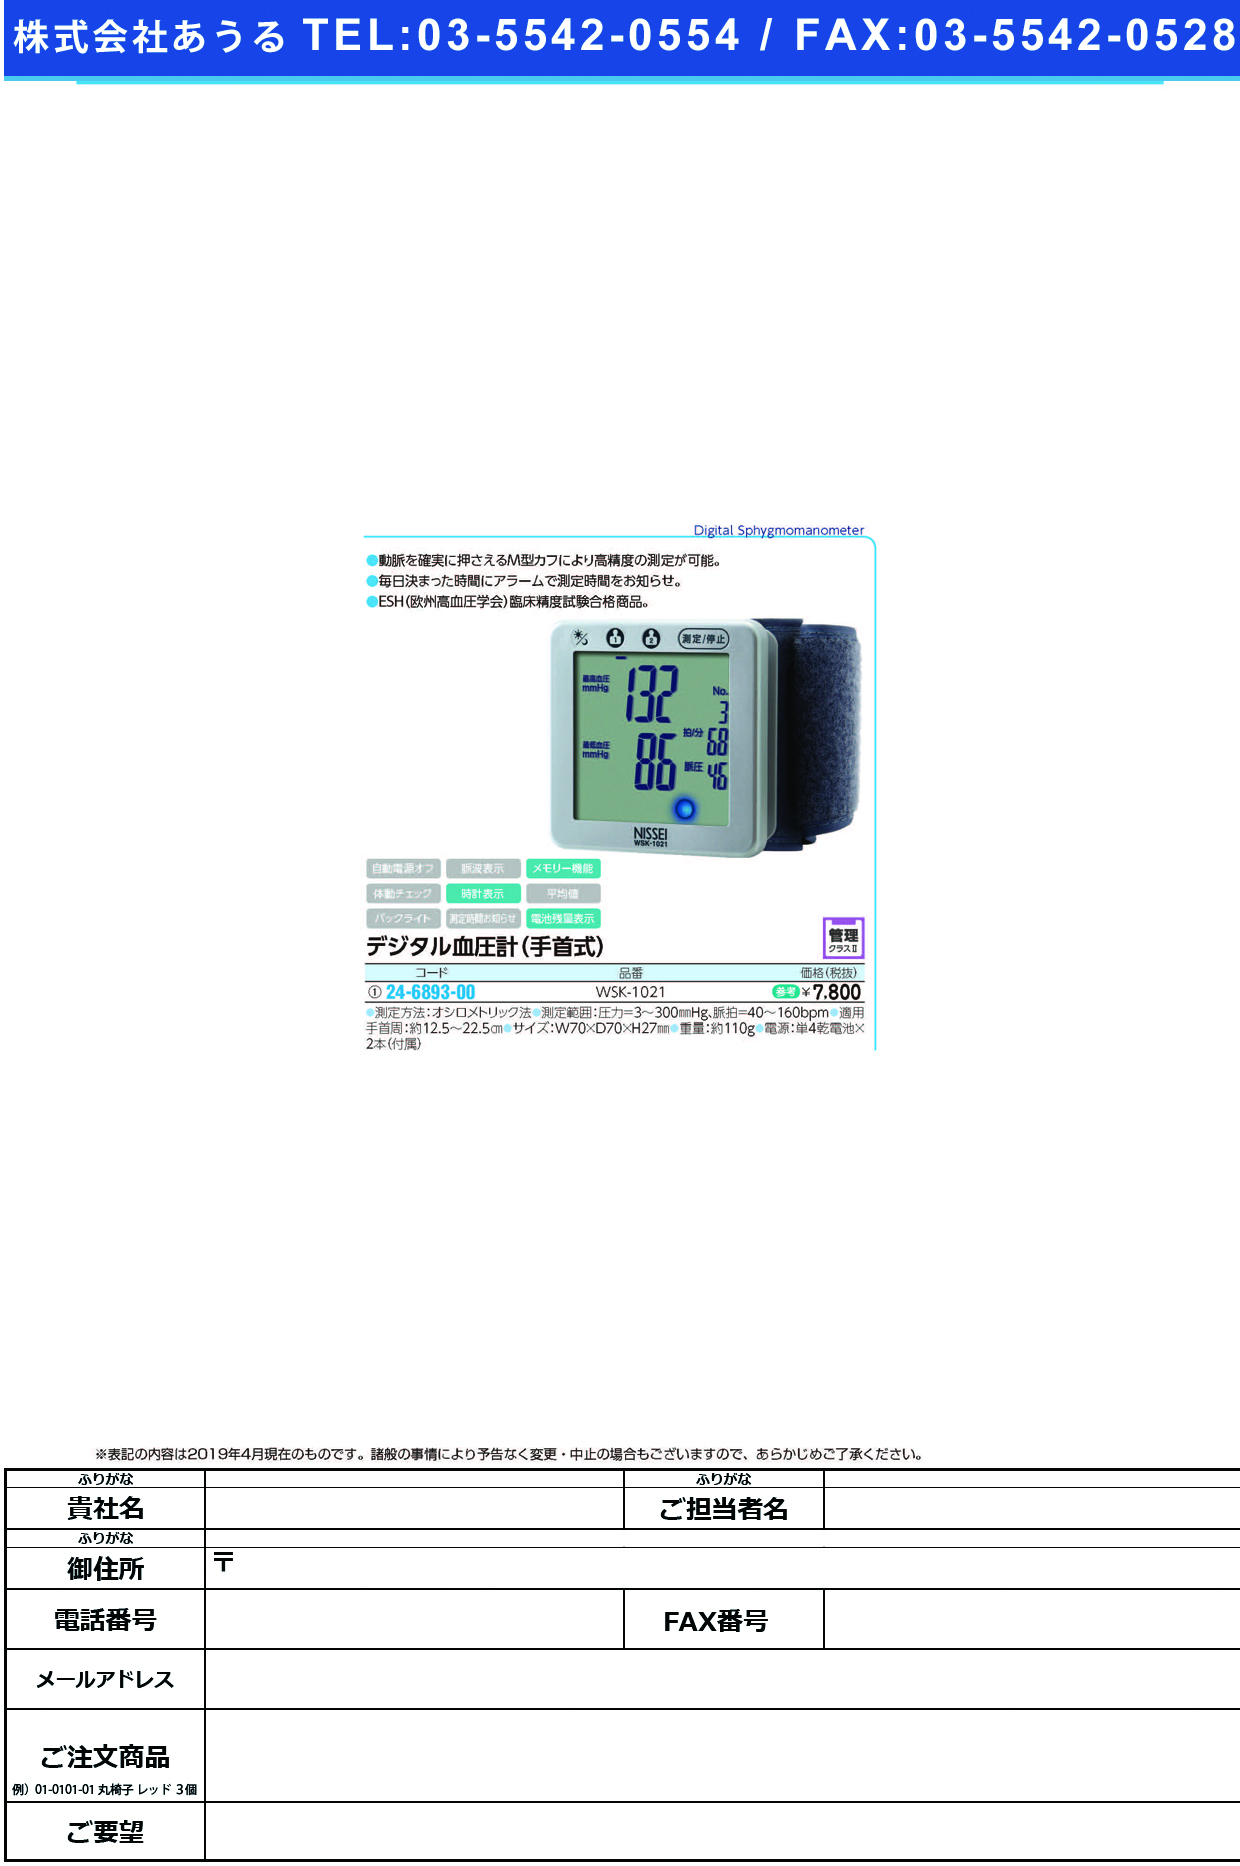 (24-6893-00)デジタル血圧計（手首式） WSK-1021 ﾃﾞｼﾞﾀﾙｹﾂｱﾂｹｲ(ﾃｸﾋﾞｼｷ)(日本精密測器)【1台単位】【2019年カタログ商品】